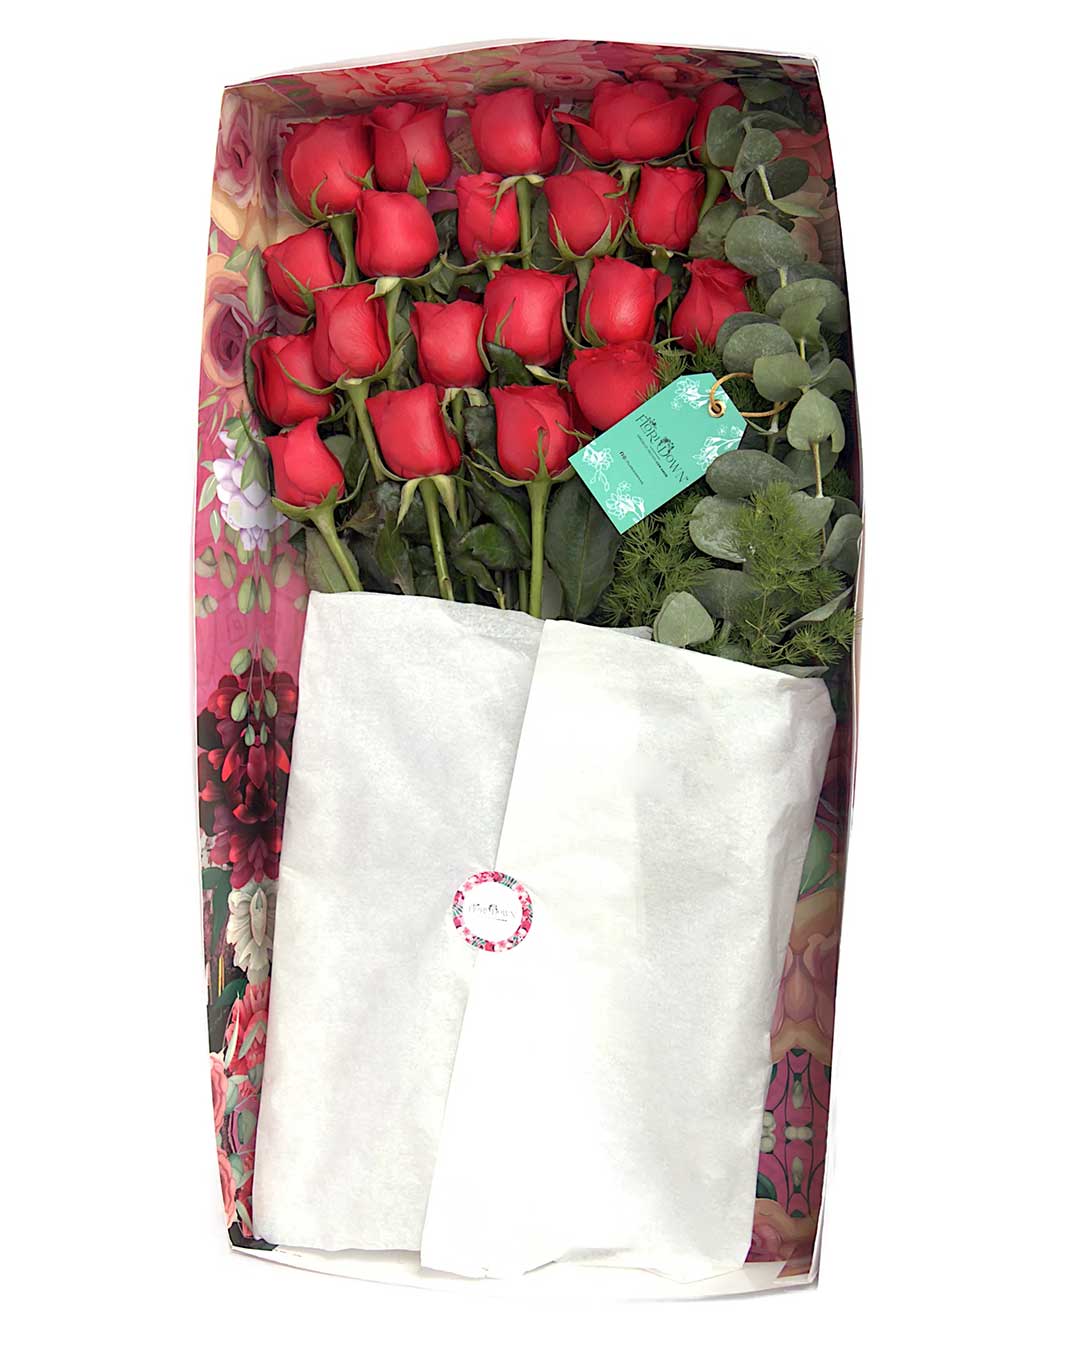 Arreglo de flores naturales con 20 rosas, eucalipto y pino en caja de cartón decorada.